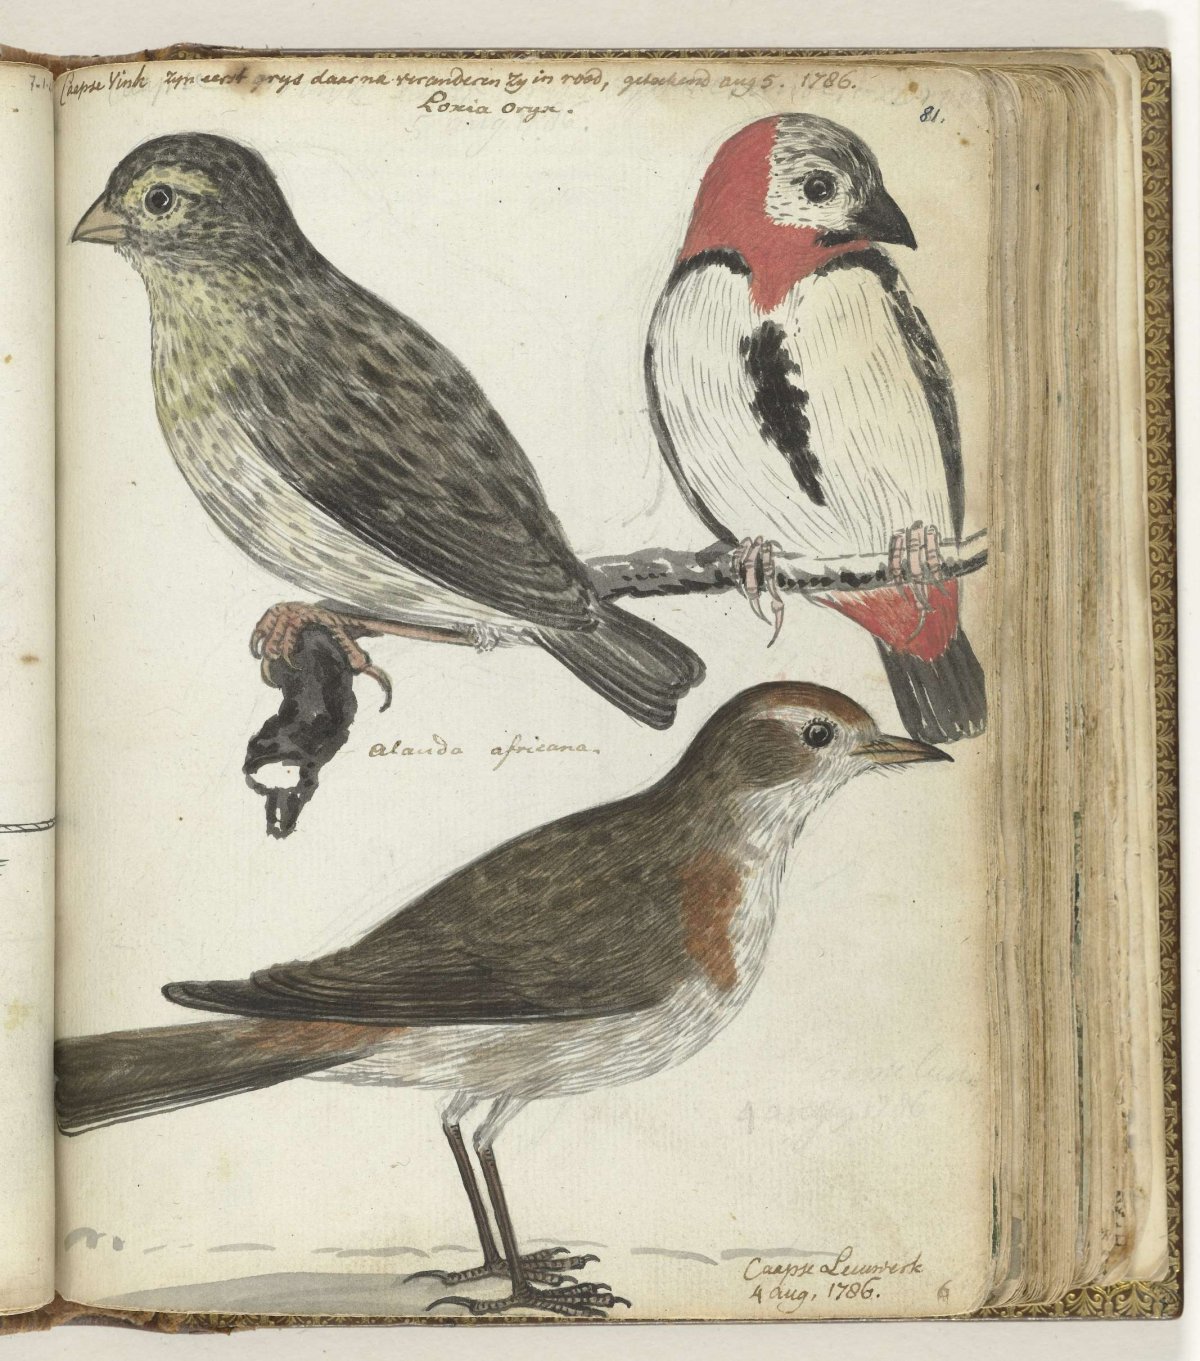 Kaapse vogels, Jan Brandes, 1786